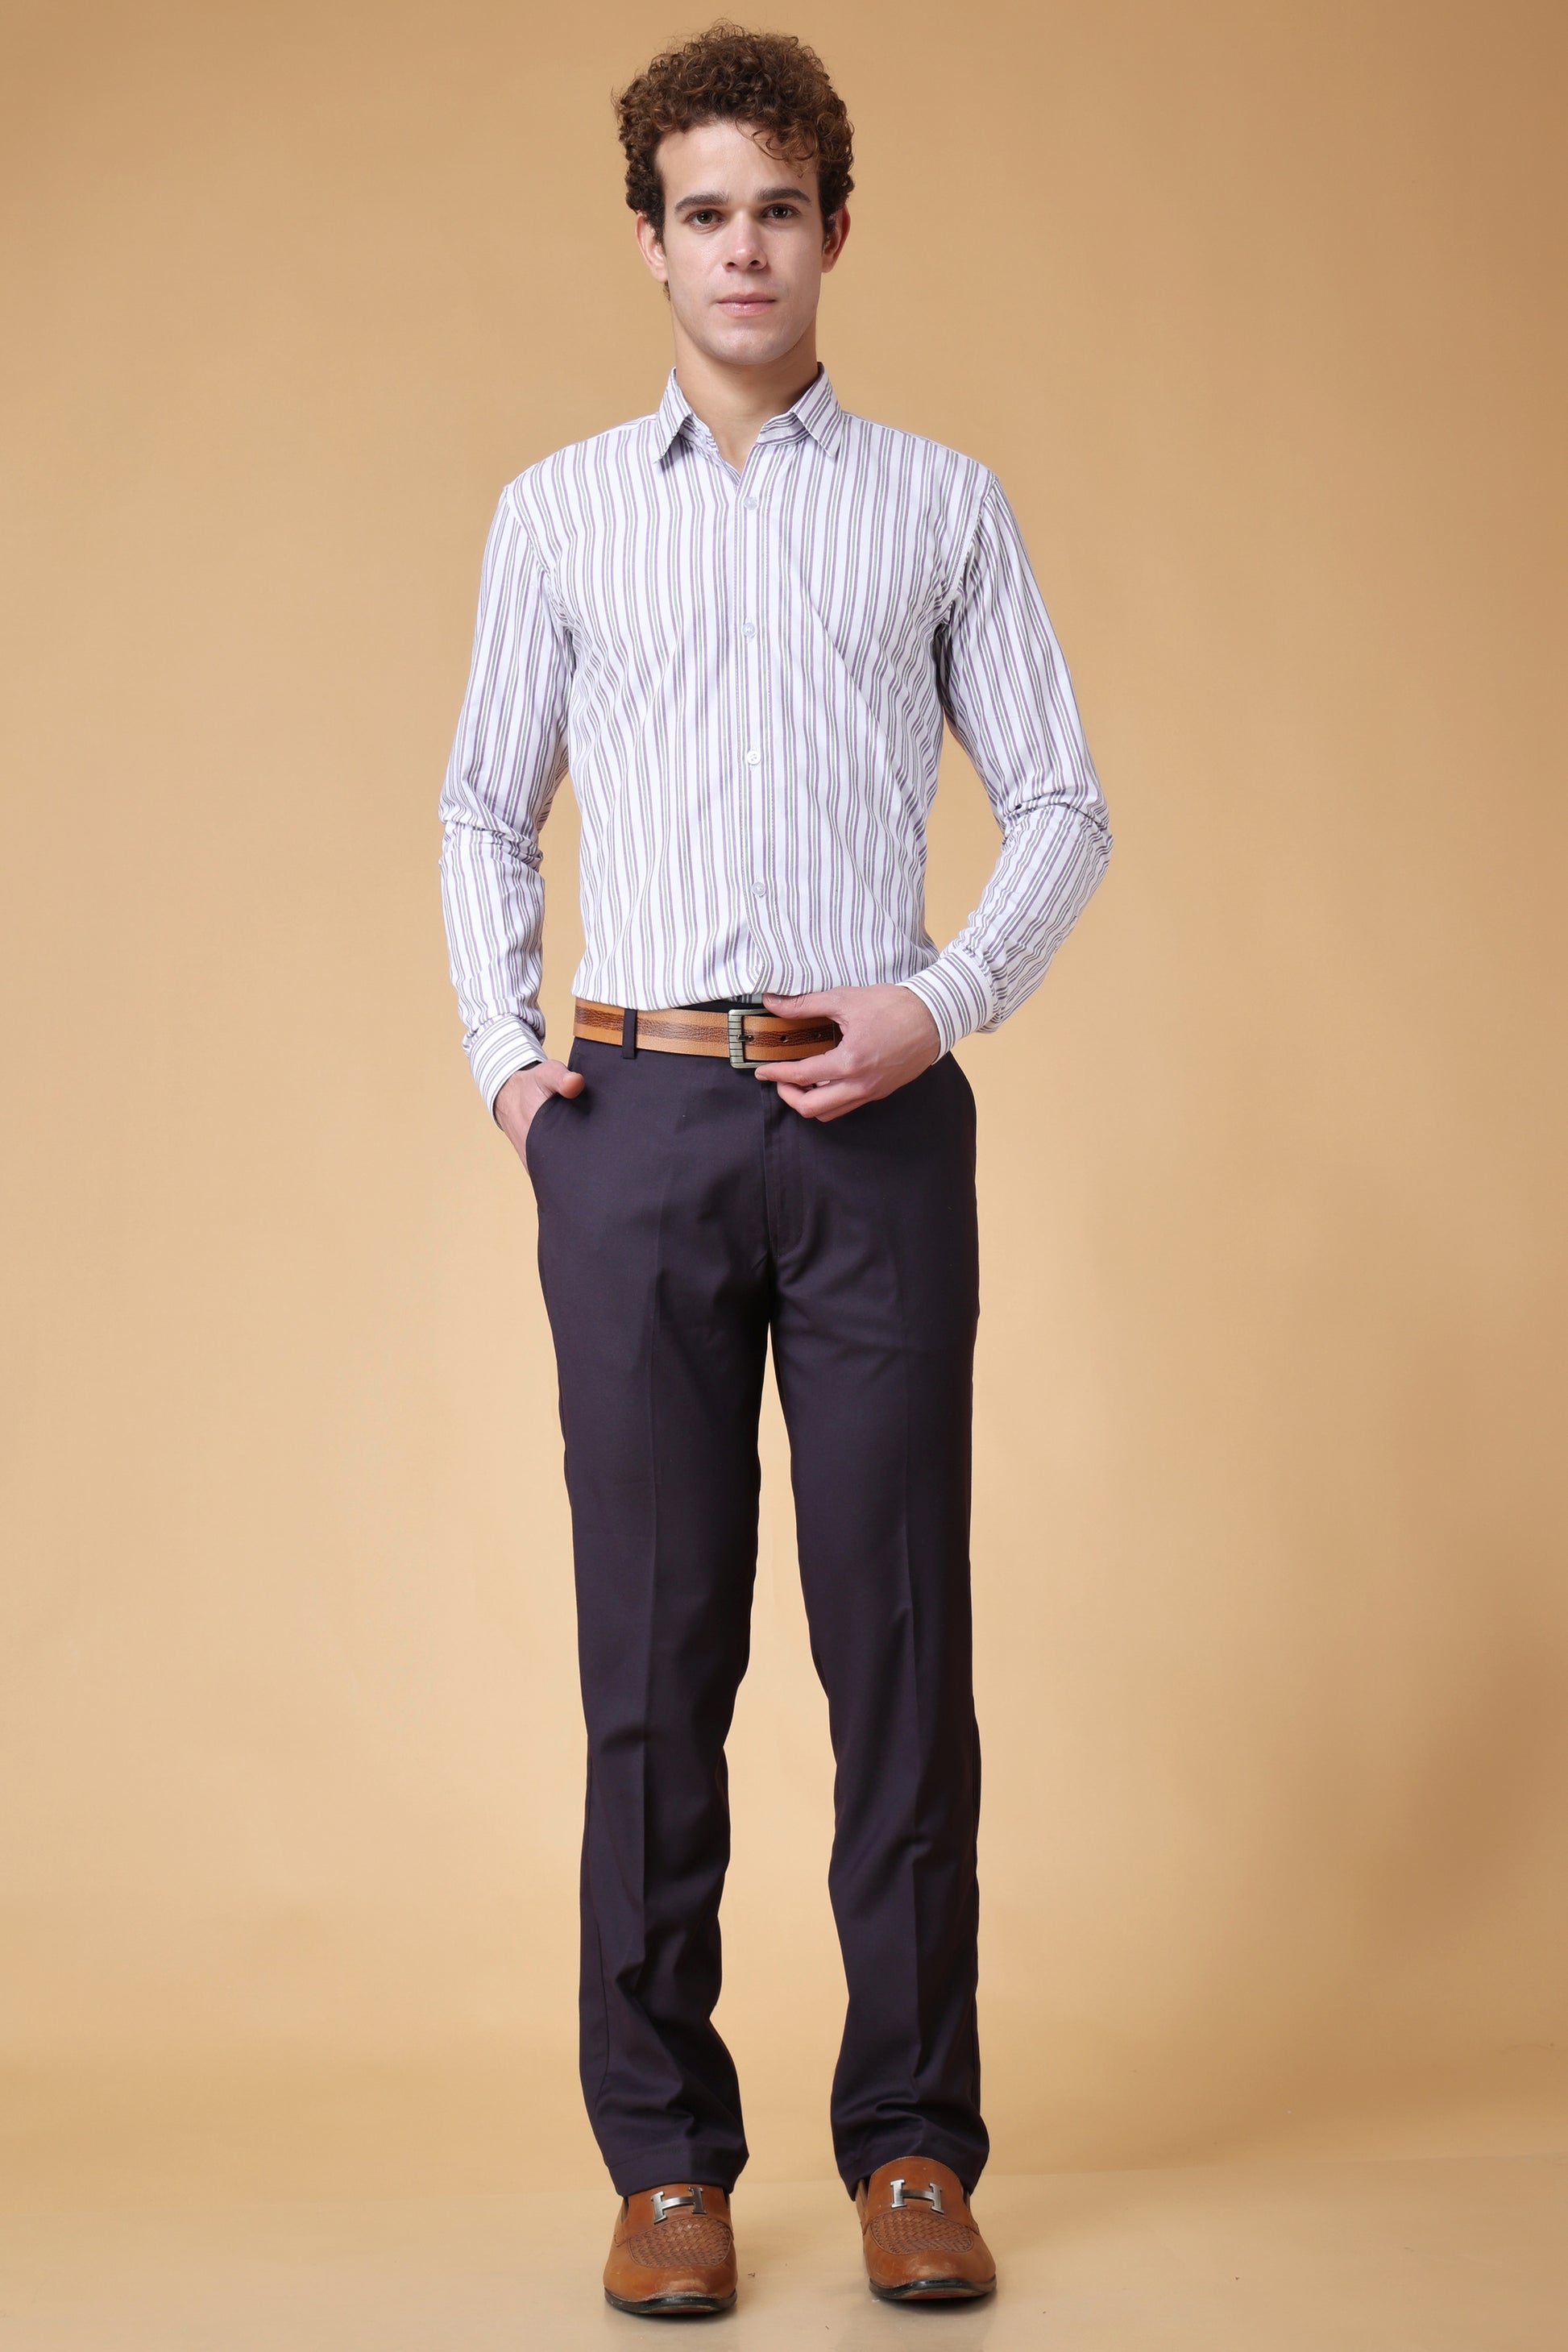 Men's Plus Size Polar Grey Striped Shirt